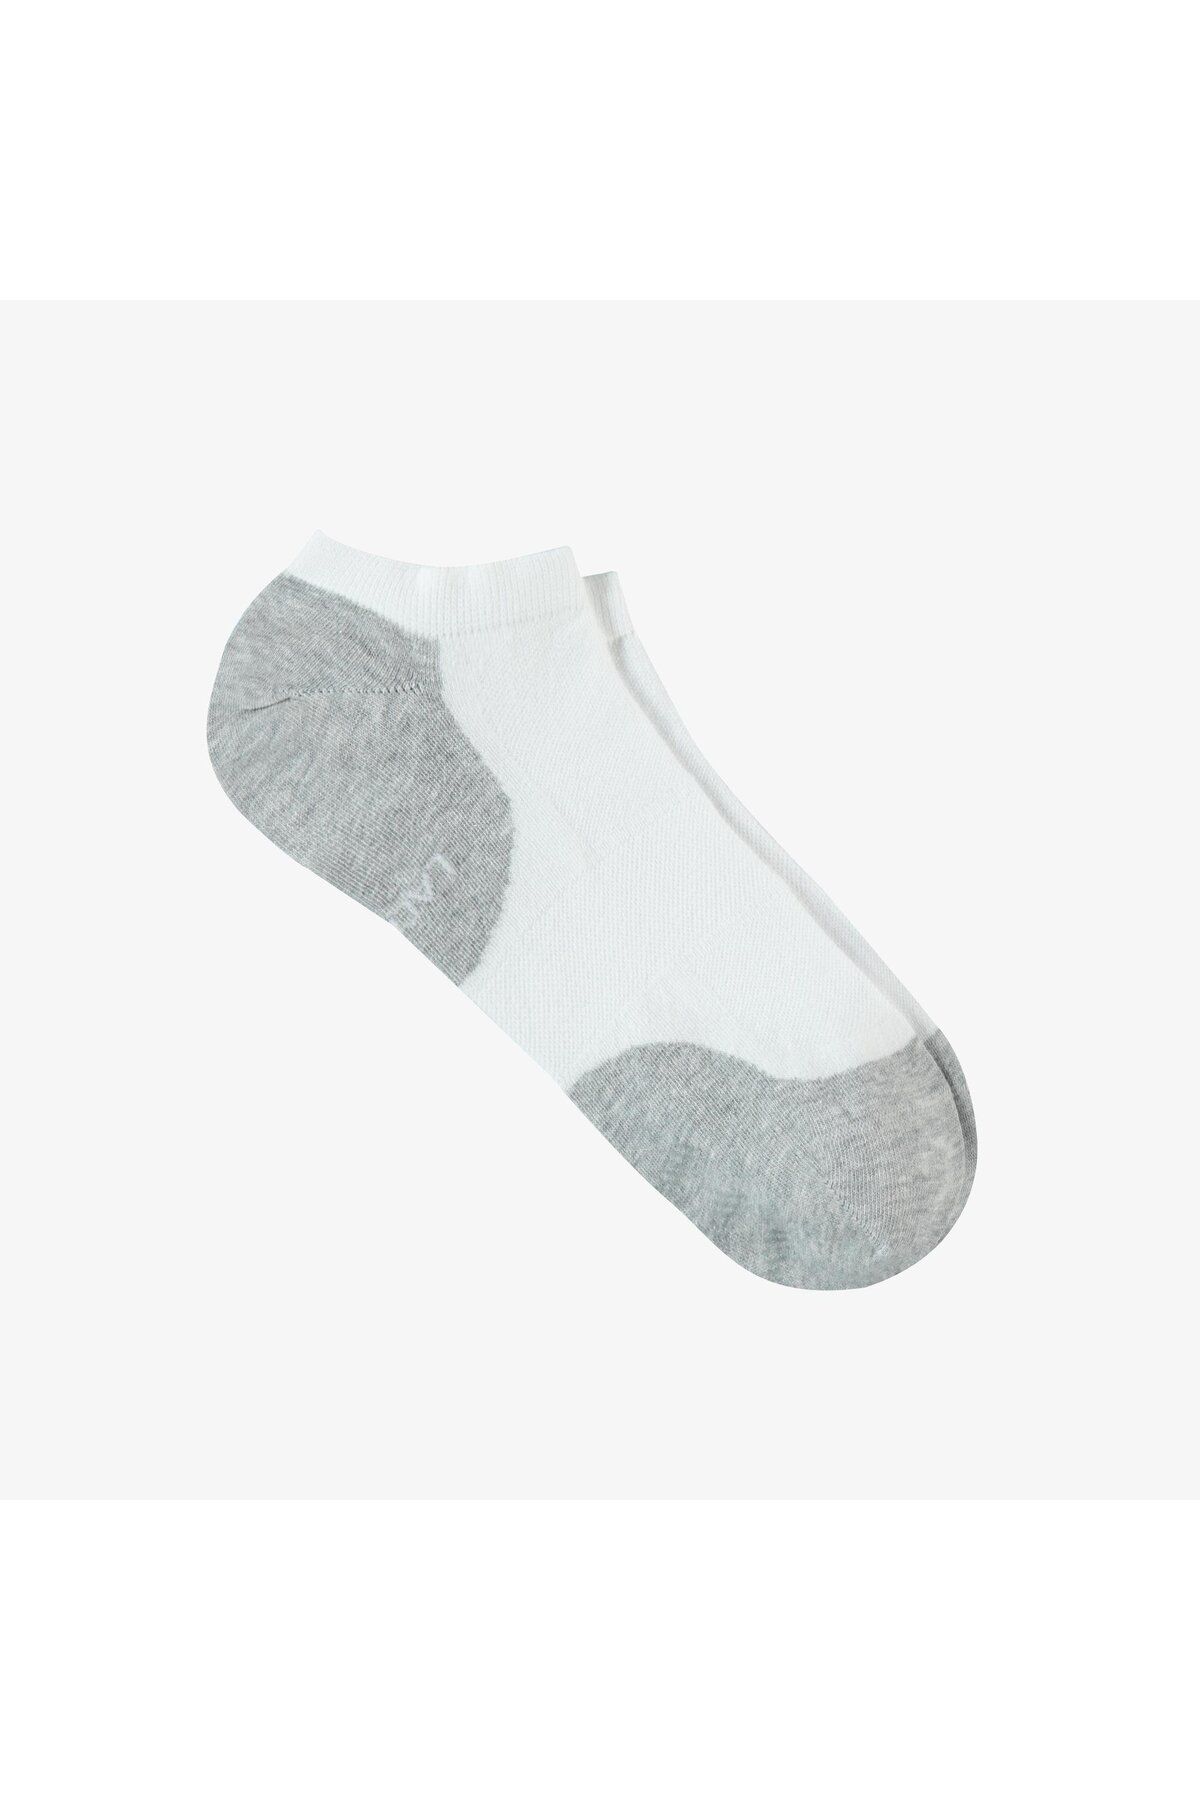 Lacoste Erkek Renk Bloklu Beyaz Çorap RA0313-13B